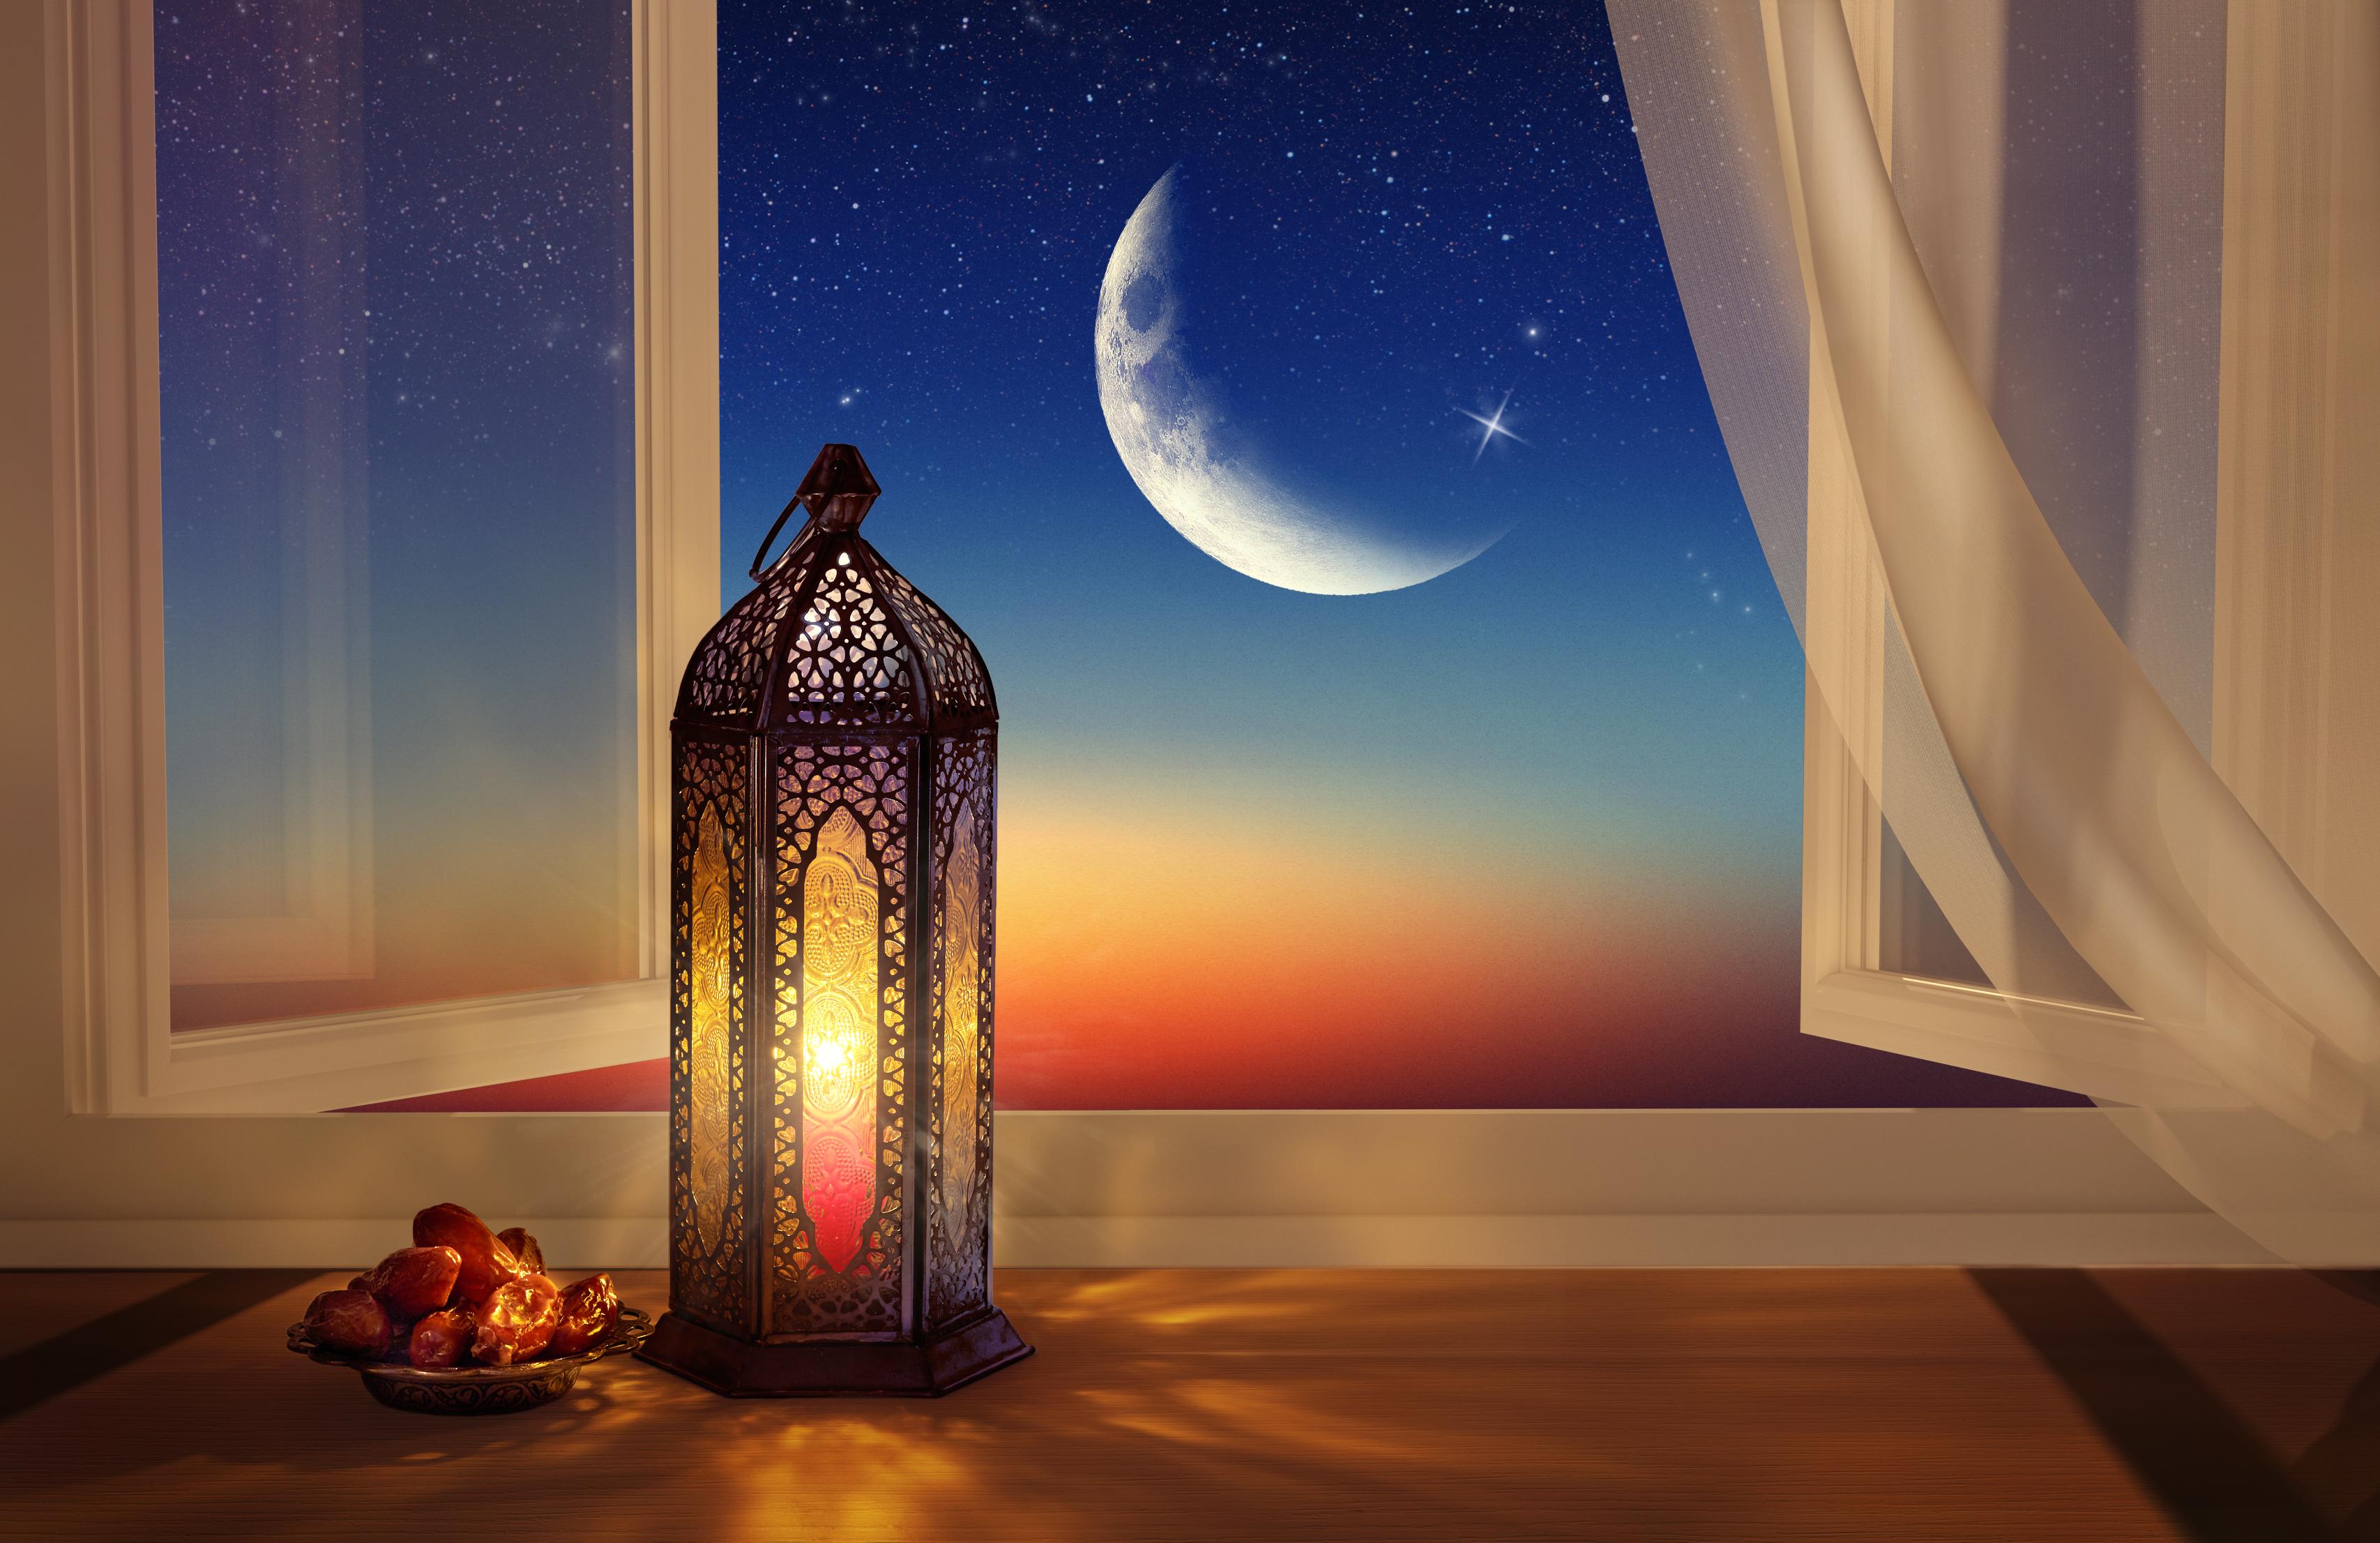 fasting in ramadan